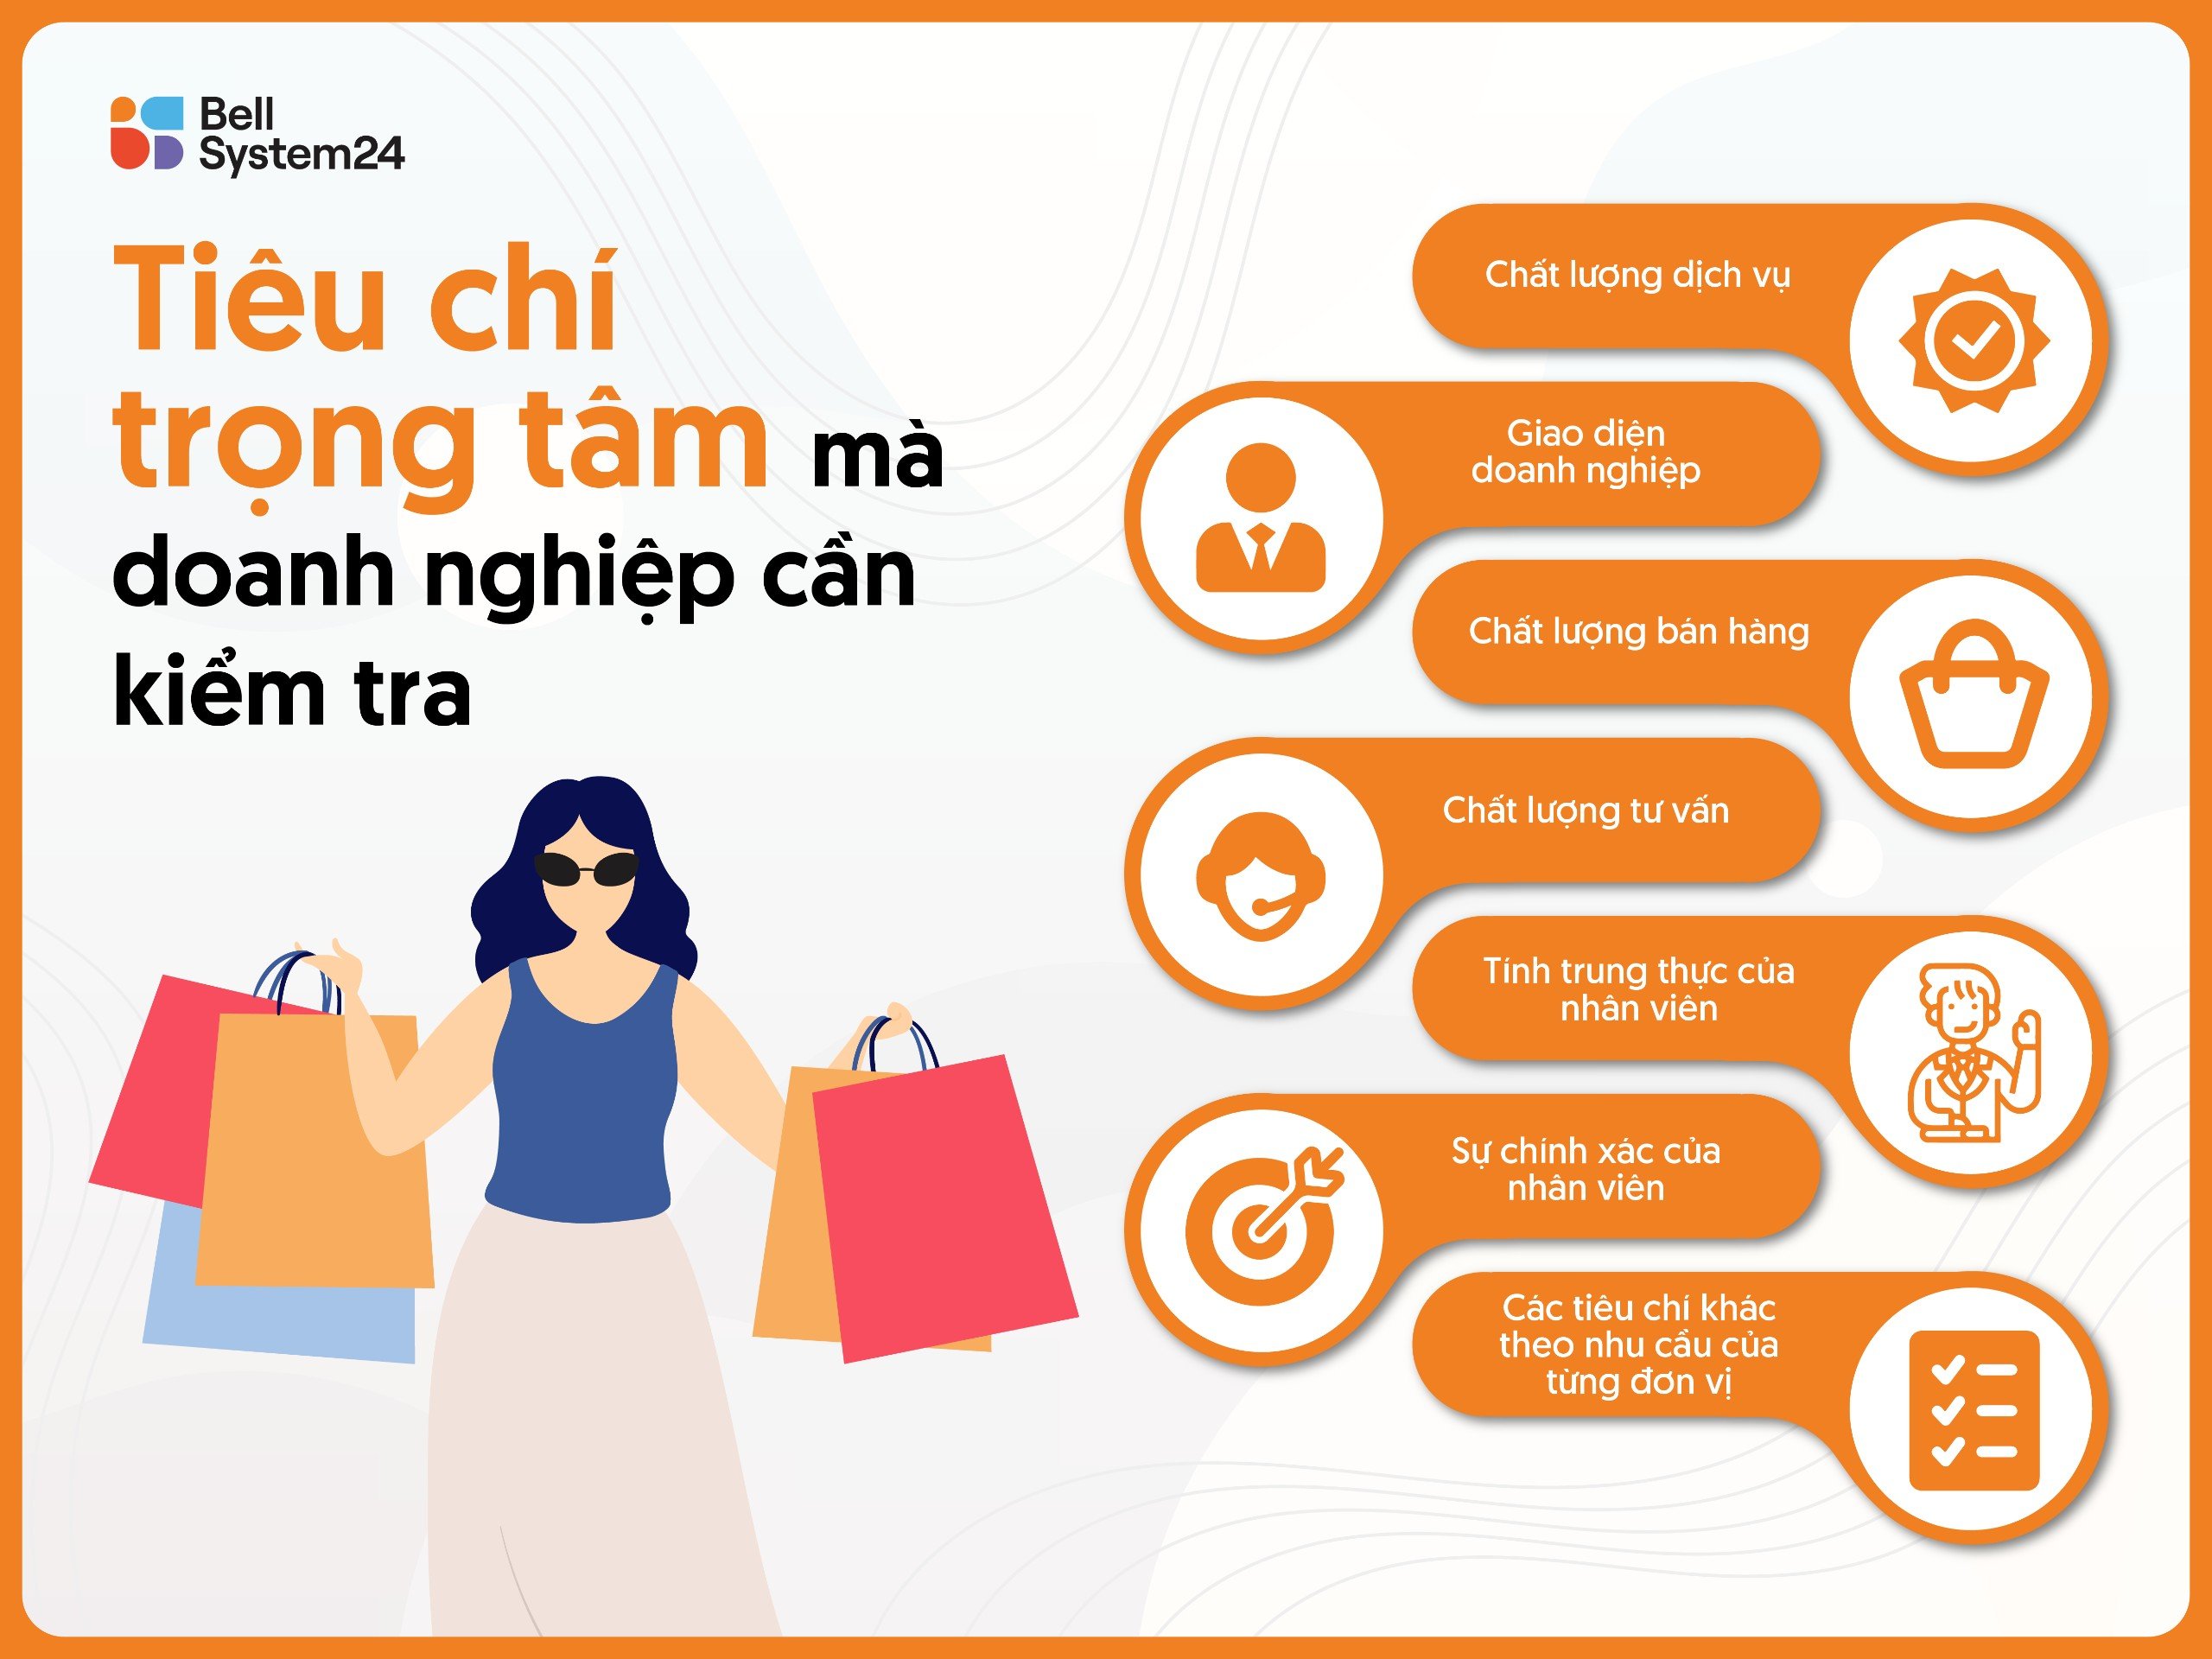 Mystery Shopping tại Bellsystem24 Vietnam sẽ có những bảng khảo sát đánh giá theo nhu cầu và mục tiêu của mỗi doanh nghiệp khác nhau